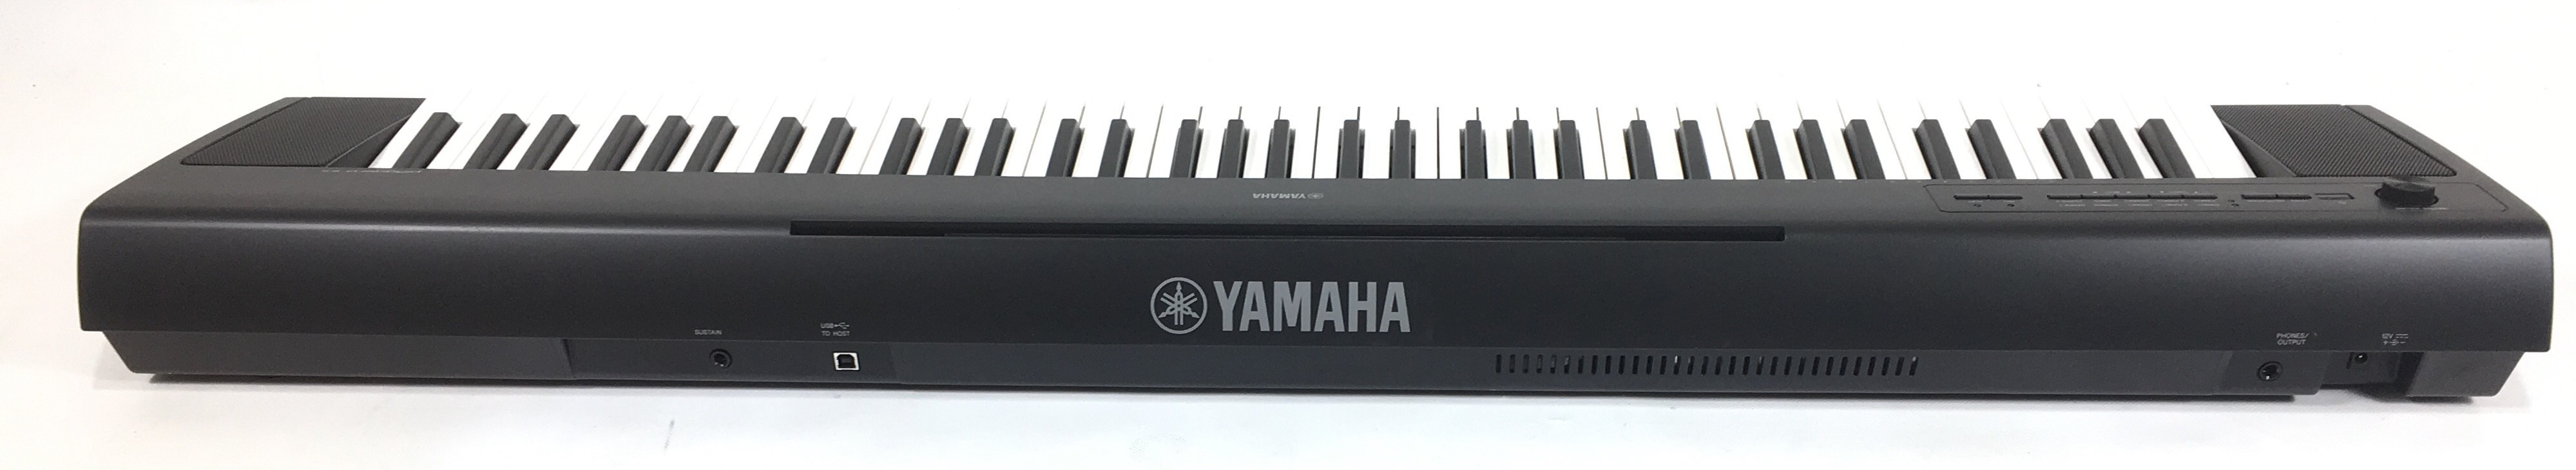 Yamaha NP32B Piaggero con custodia e pedale | Pianoforti Digitali Y